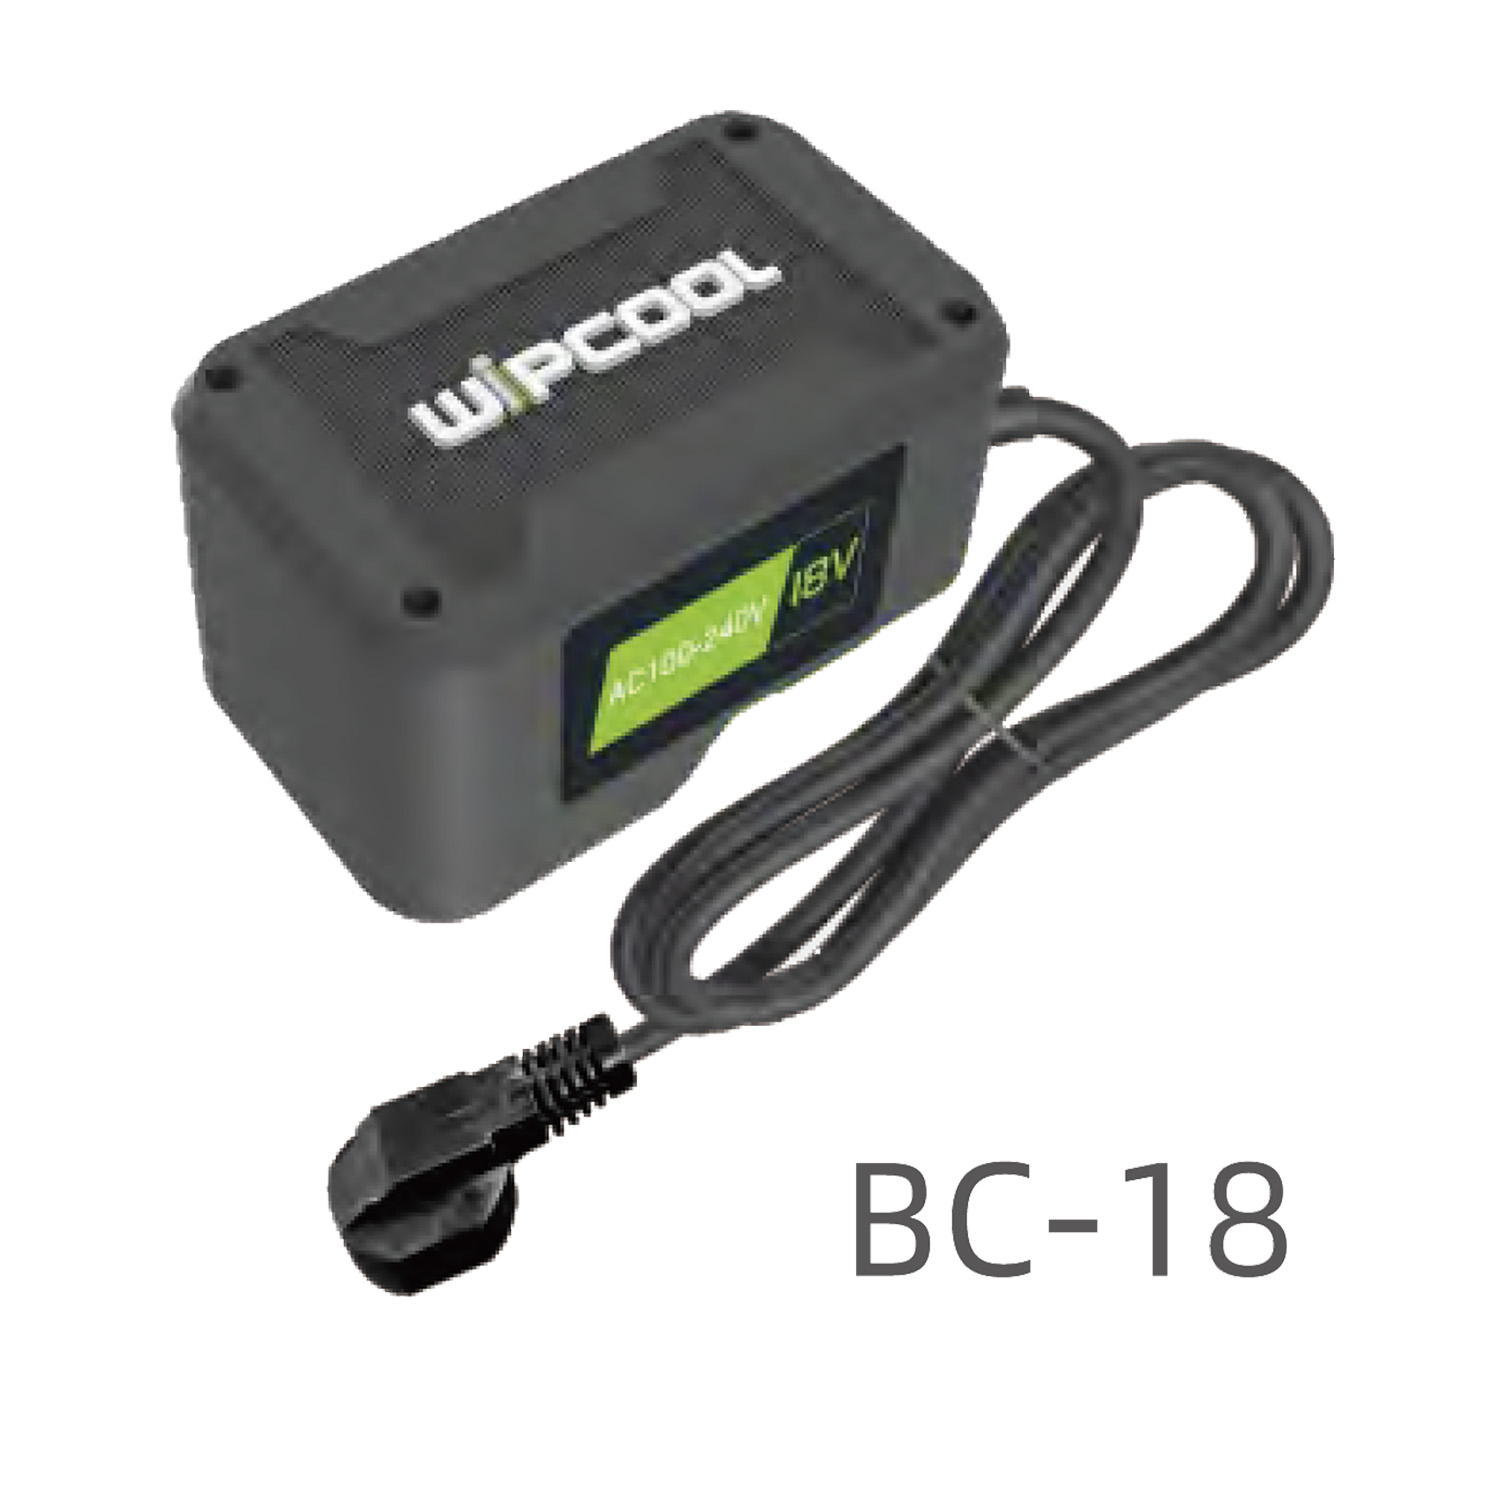 Convertitore batteria a filo - accessorio per idropulitrici a batteria - Ingresso 220V-Uscita 18V - 150W (spina EU Schuko)